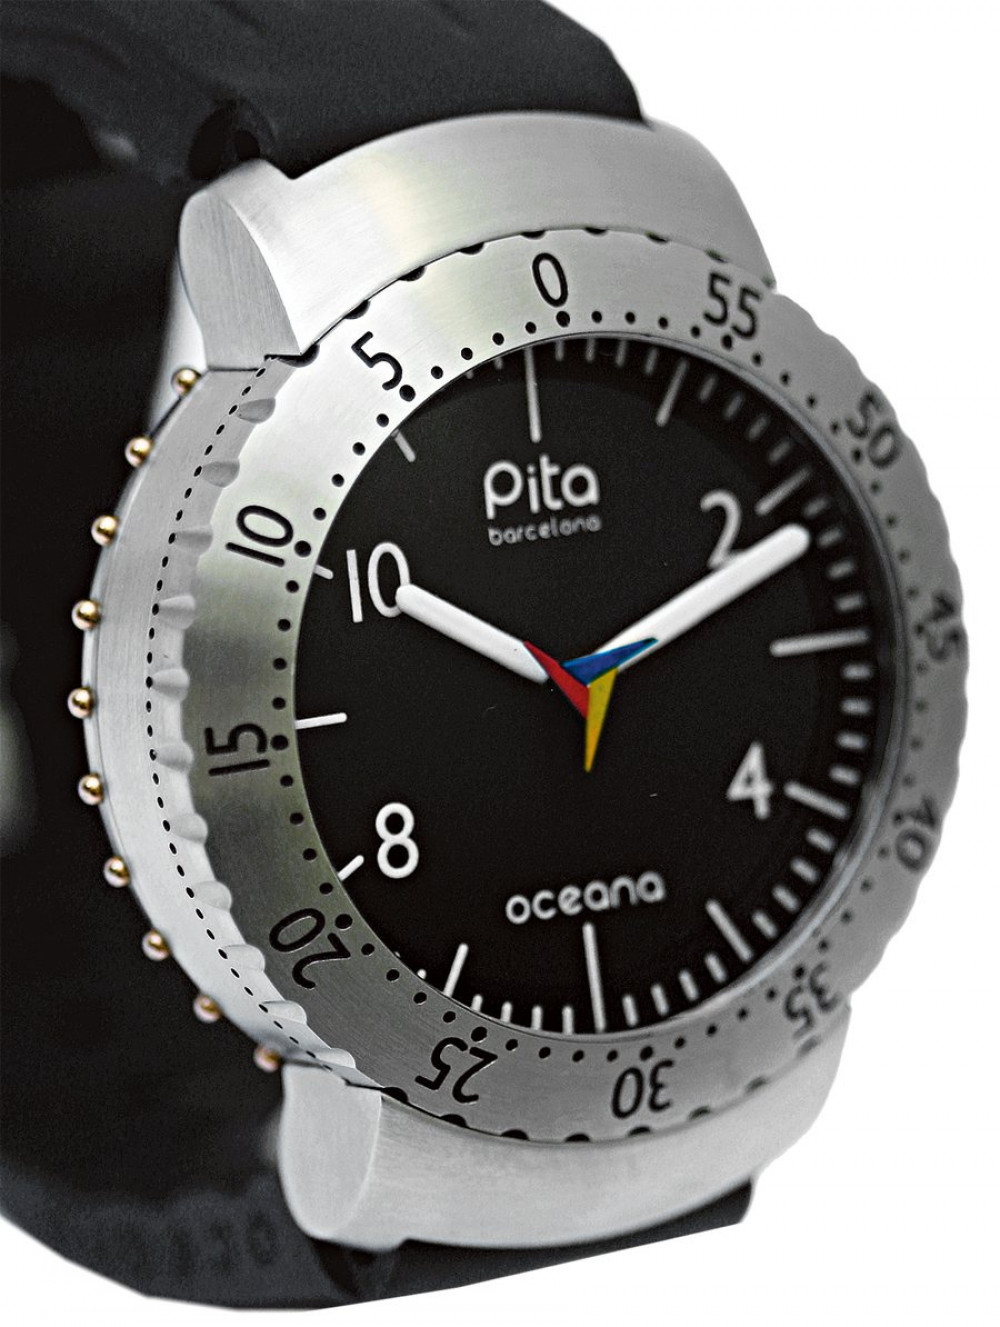 Zegarek firmy Pita, model Oceana 2000